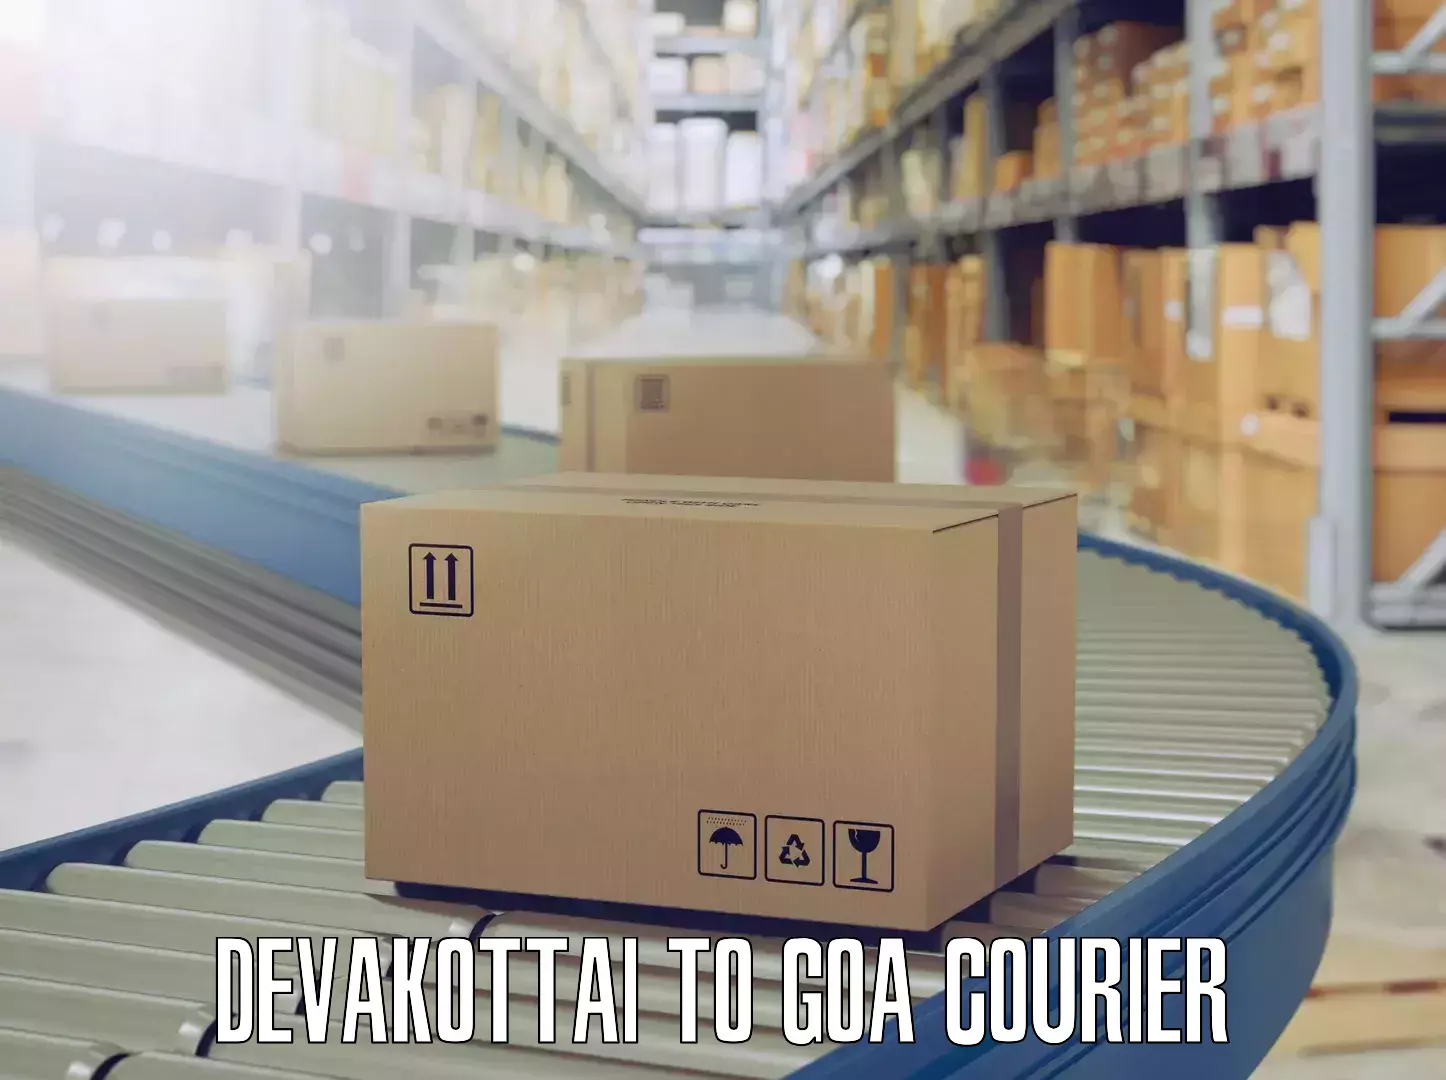 Moving and storage services Devakottai to South Goa